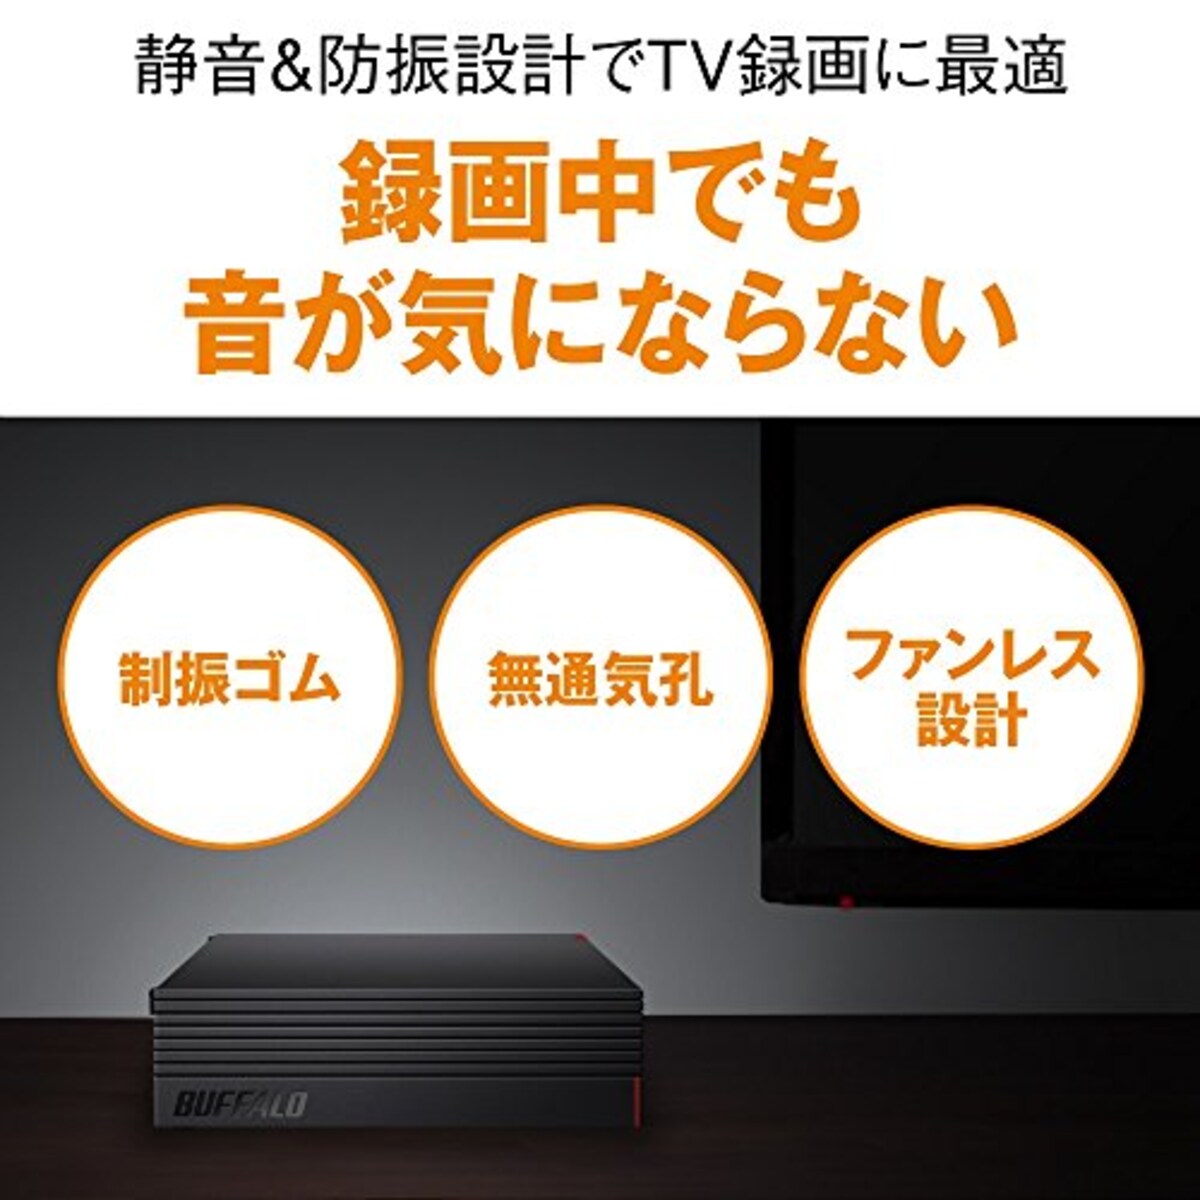  BUFFALO 外付けハードディスク 4TB テレビ録画/PC/PS4/4K対応 HD-AD4U3 + Acer モニター ディスプレイ KA220HQbid 21.5インチ/フルHD/5ms/HDMI端子対応画像3 